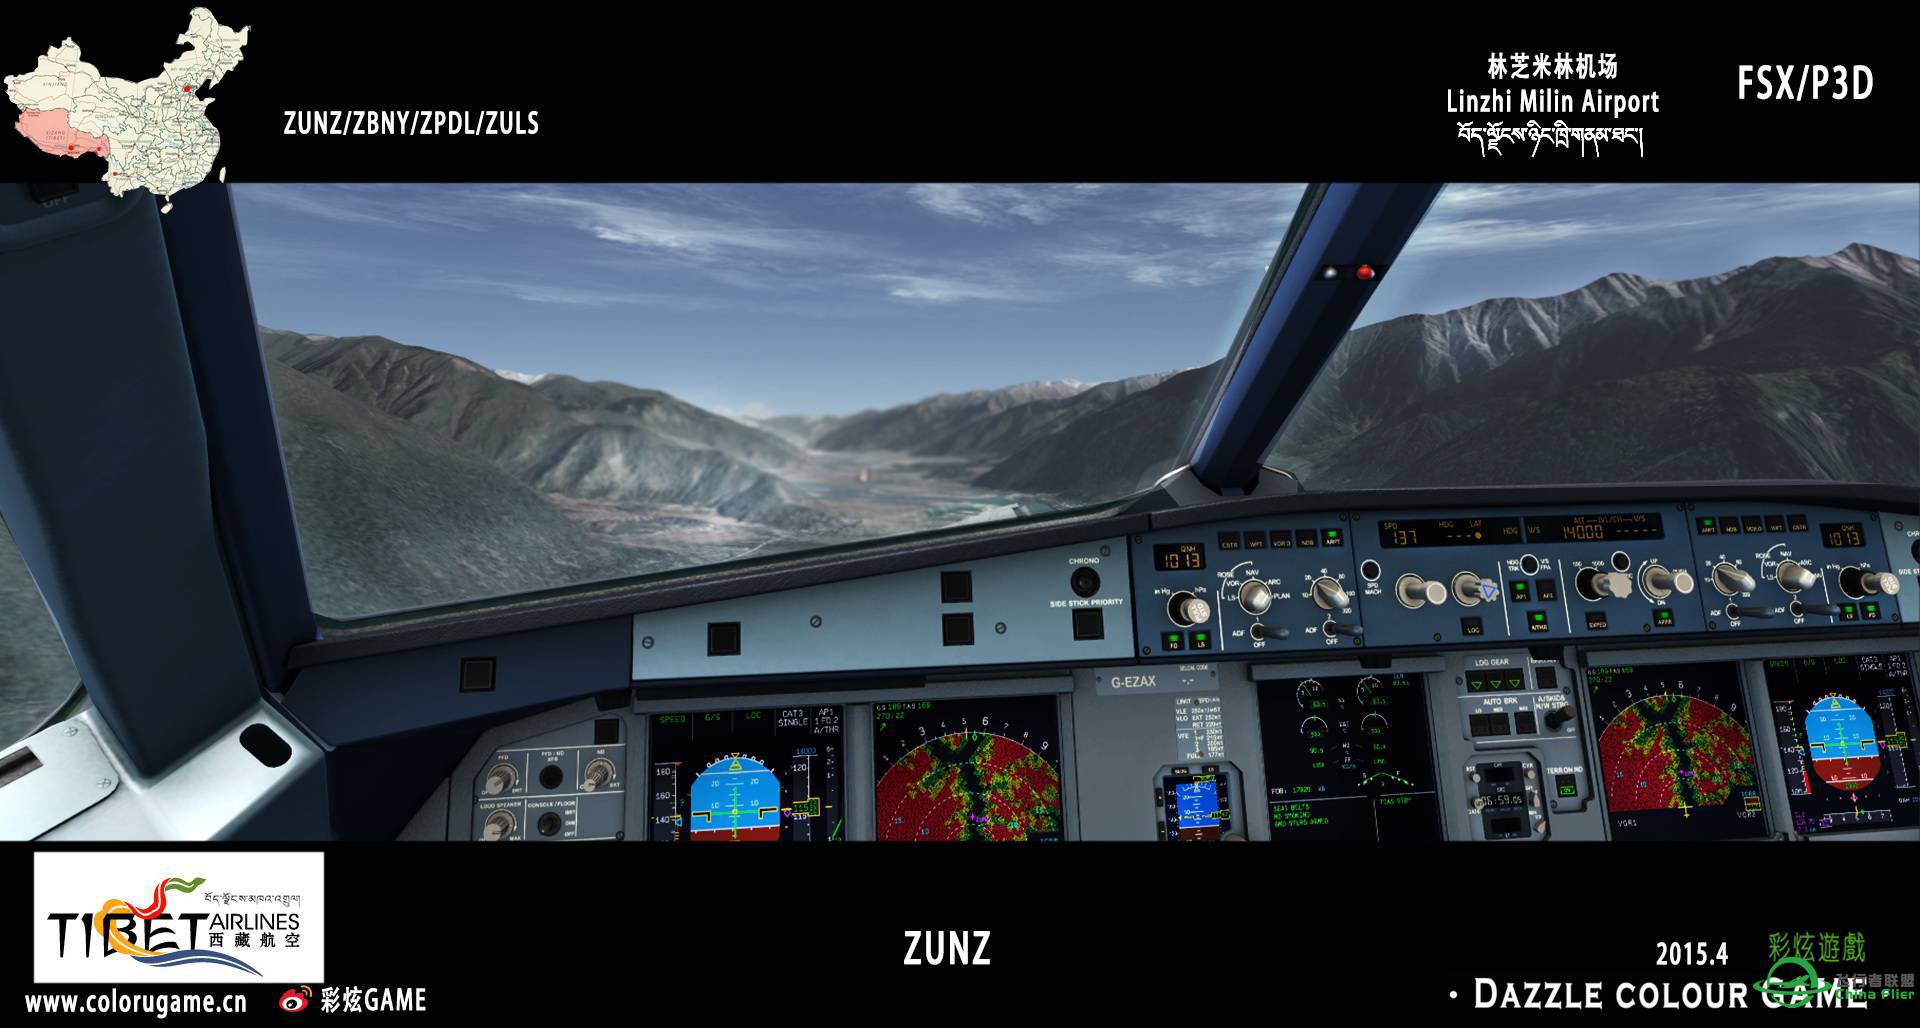 彩炫地景：林芝米林机场（ZUNZ）正式发布！-7972 